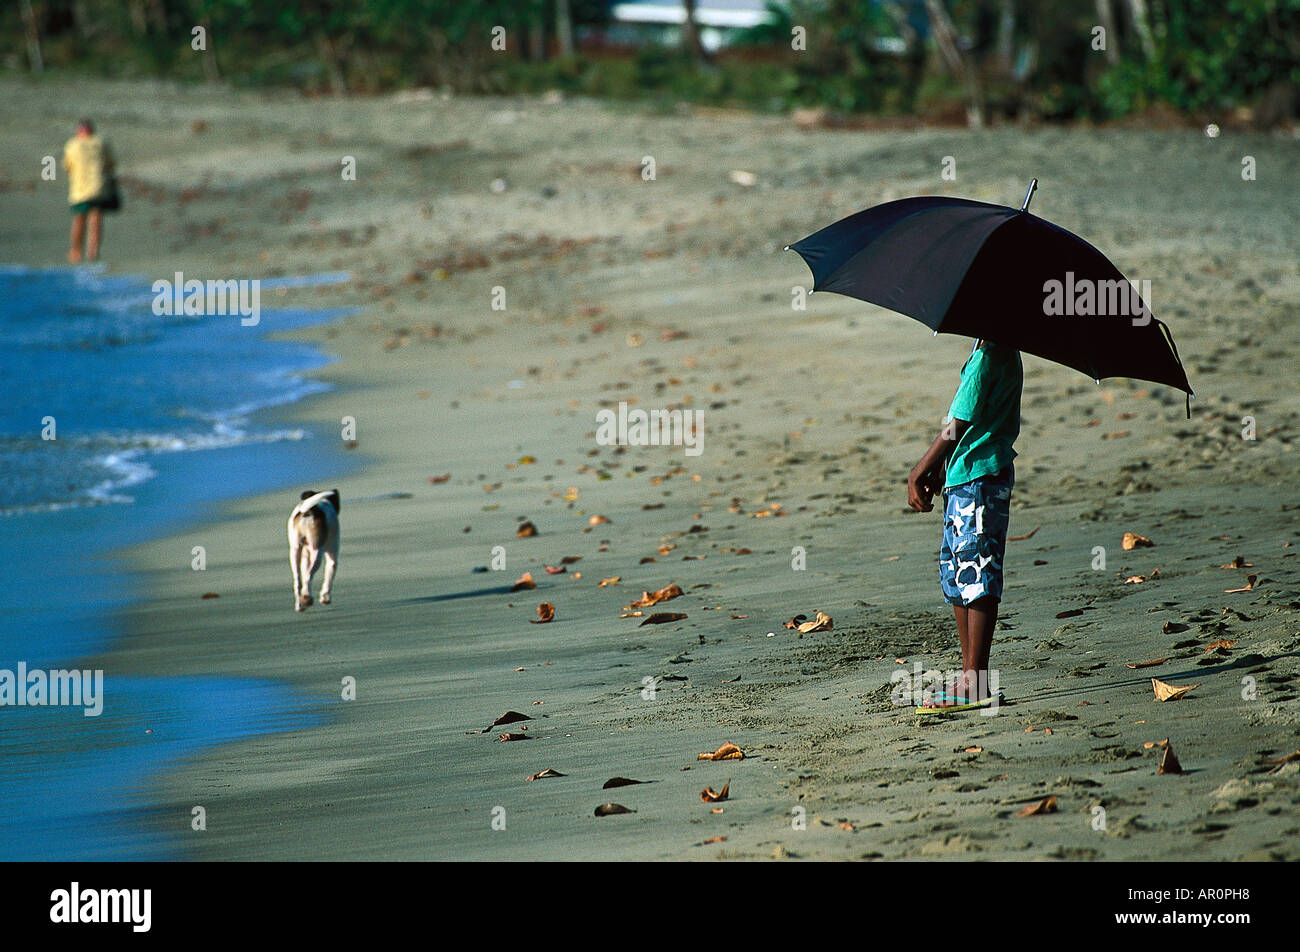 Junge mit Sonnenschirm am Strand, Tobago, West Indies, Karibik Foto de stock